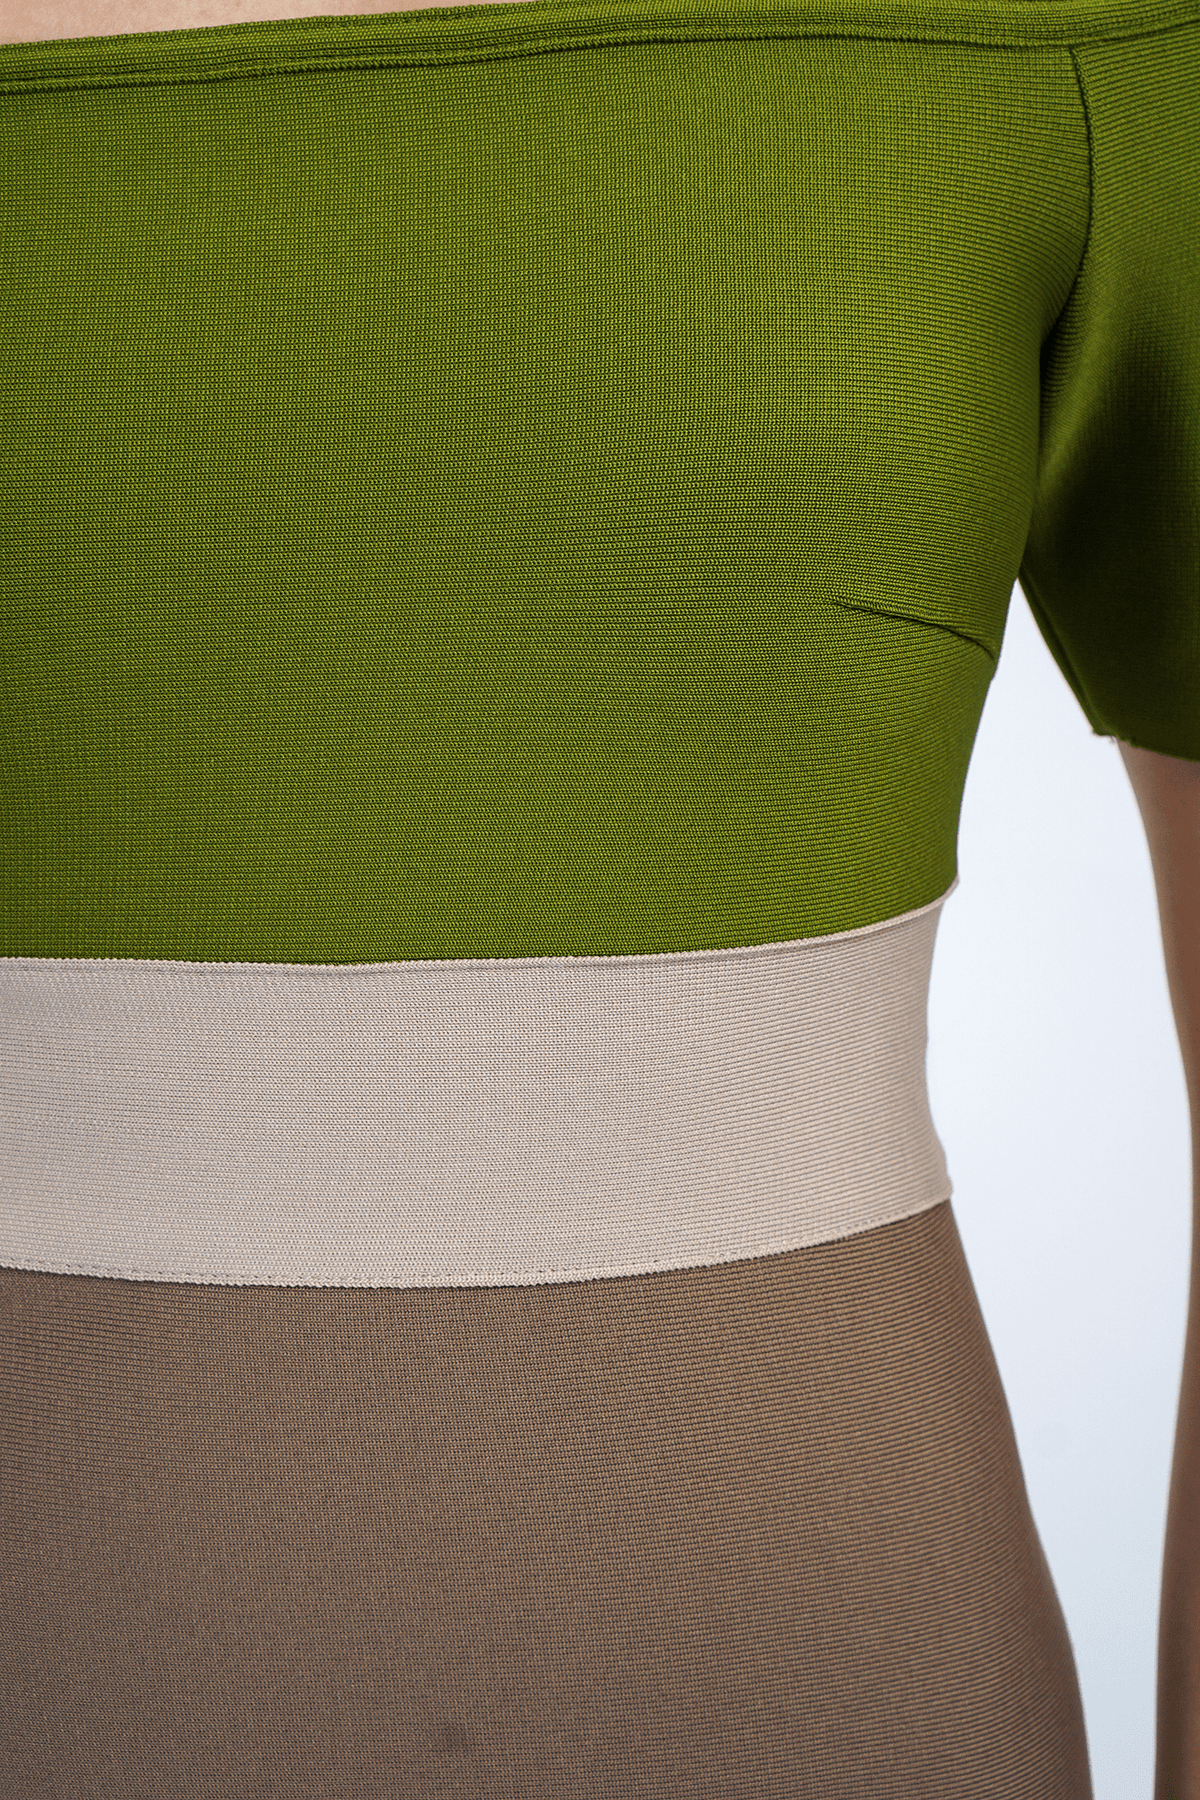 DCD DRESSES Olive Color Block Bandage Off Shoulder Dress